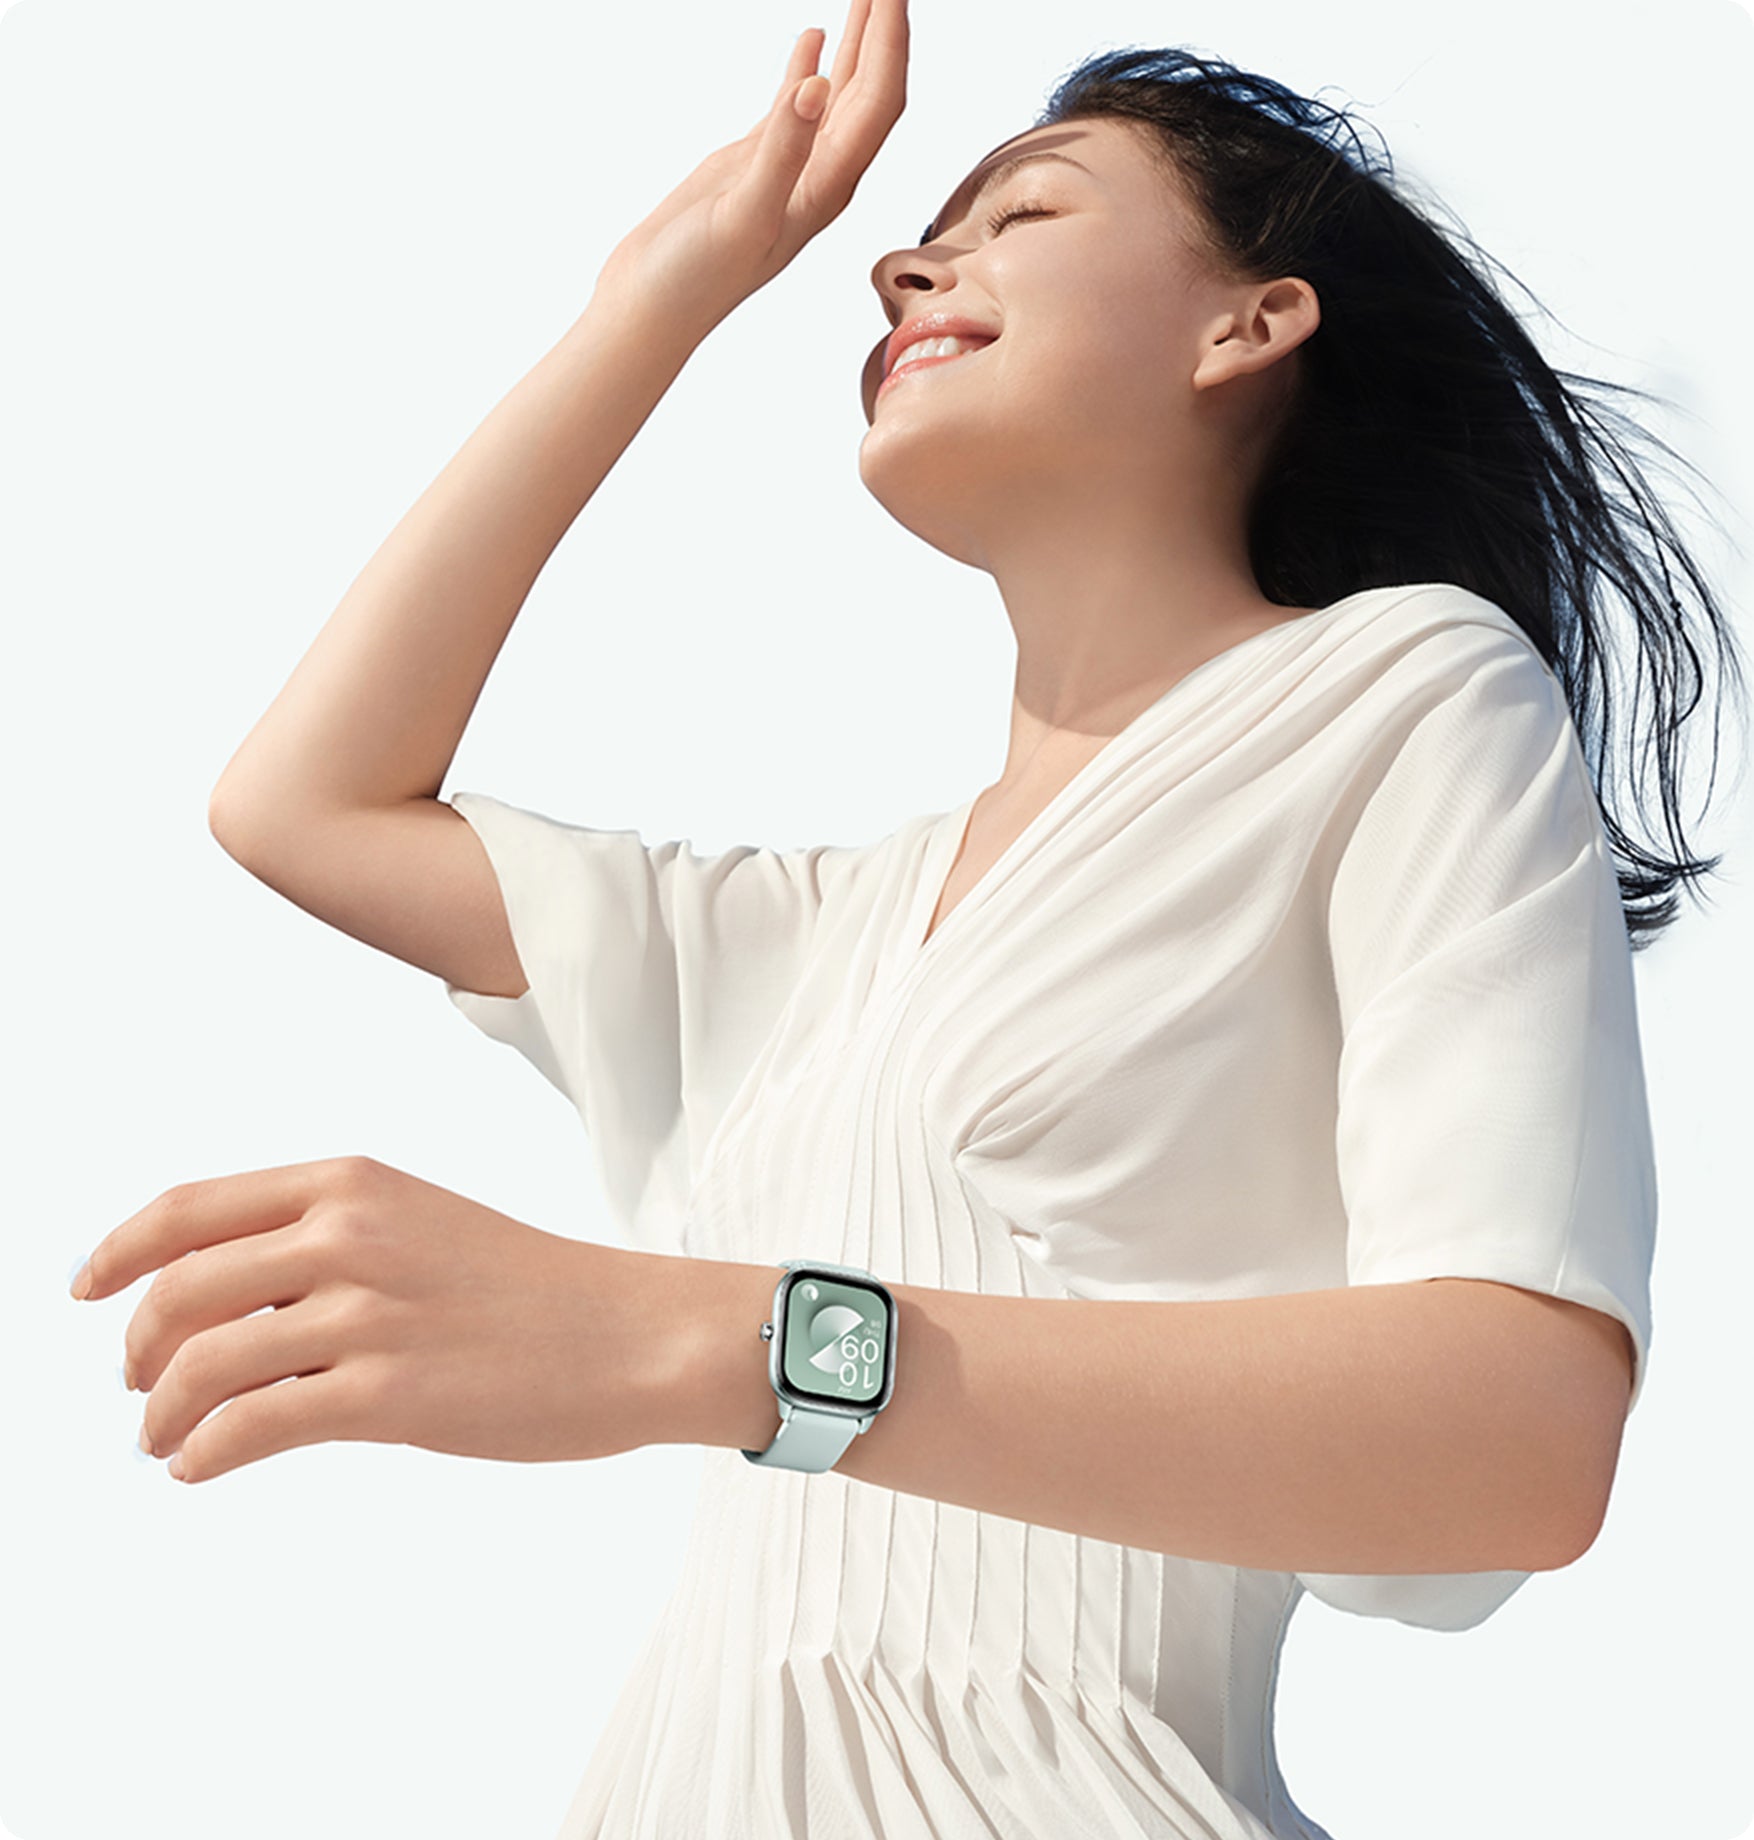 Relógio Smartwatch Amazfit GTS 4 Mini